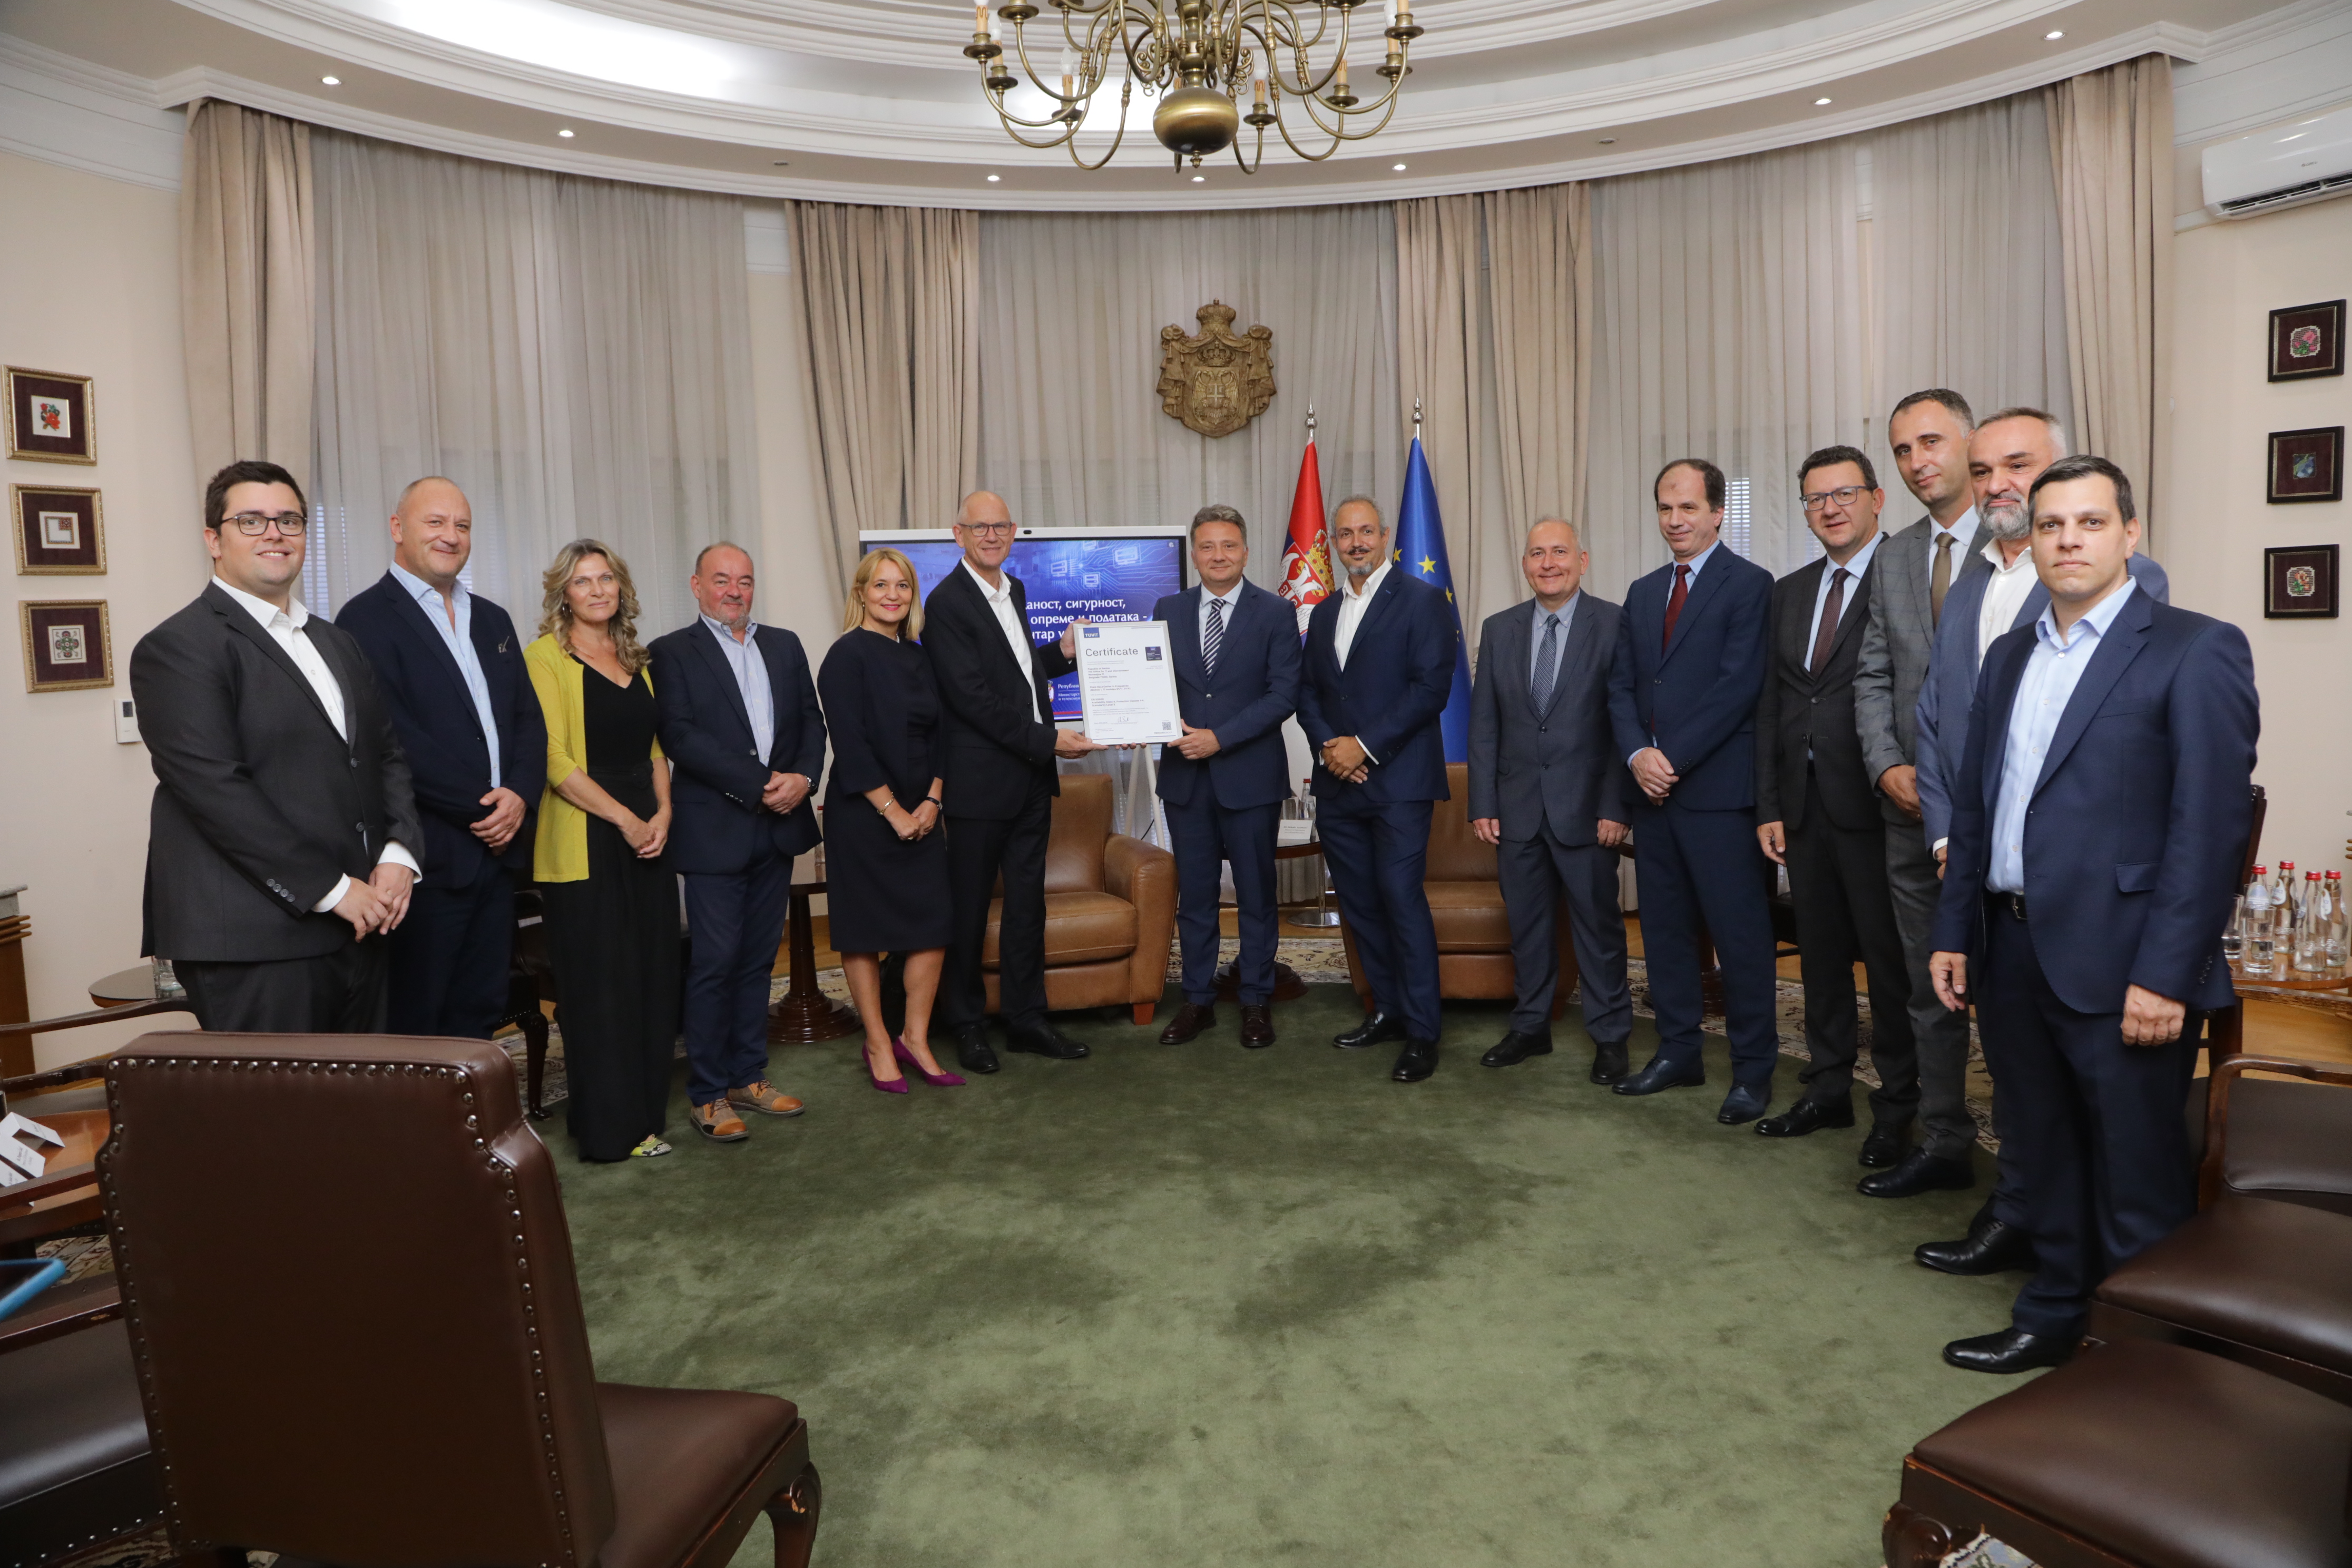 Međunarodni sertifikat za najviši nivo pouzdanosti i bezbednosti Državnom data centru u Kragujevcu